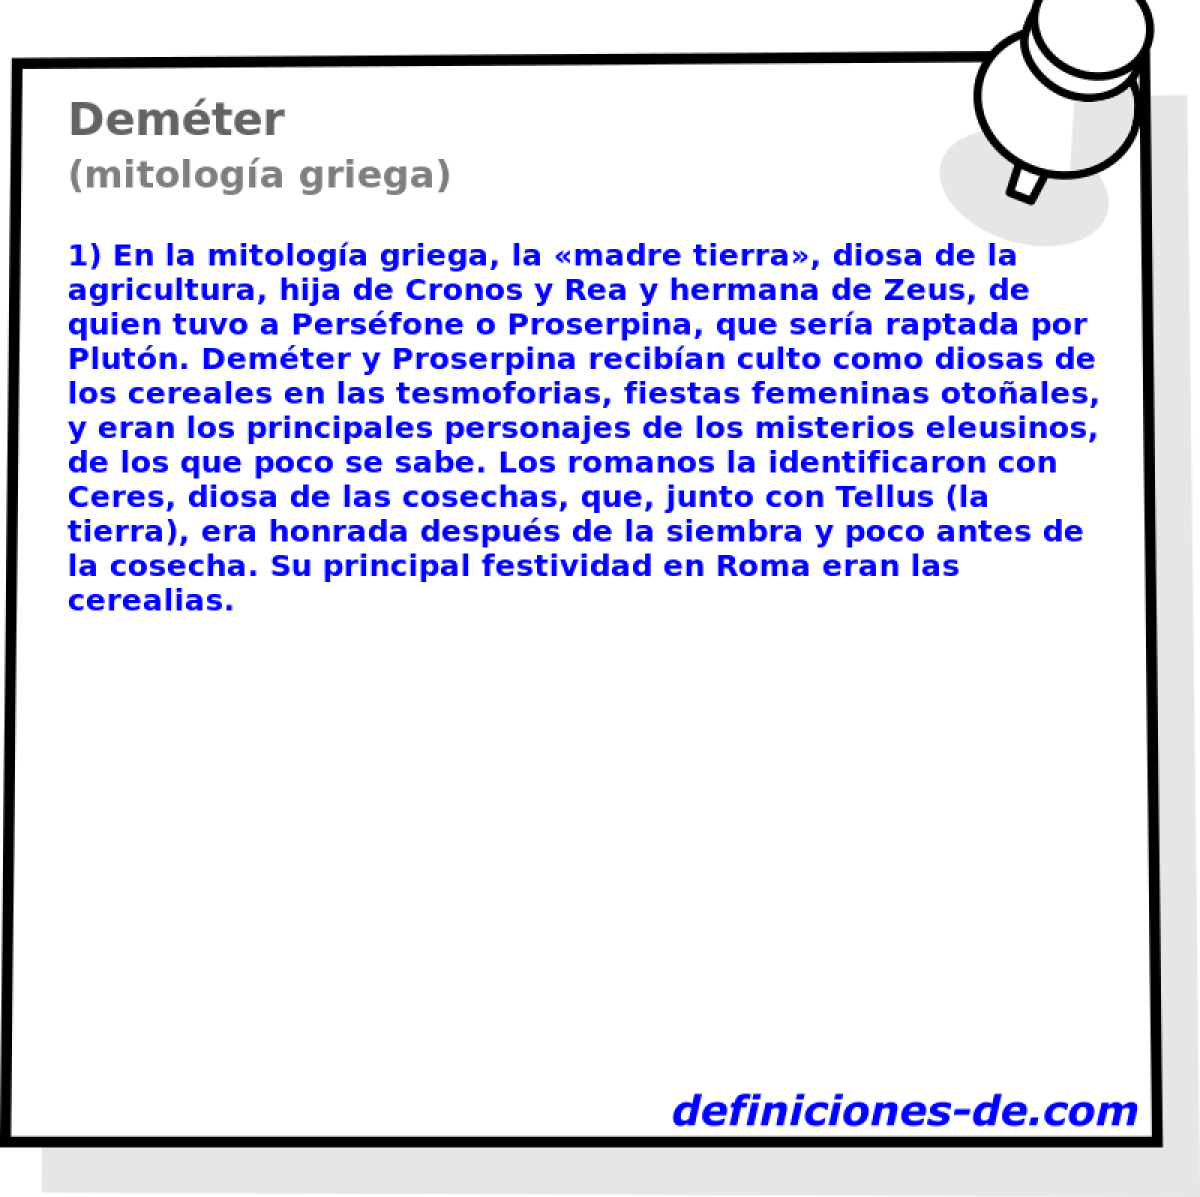 Demter (mitologa griega)